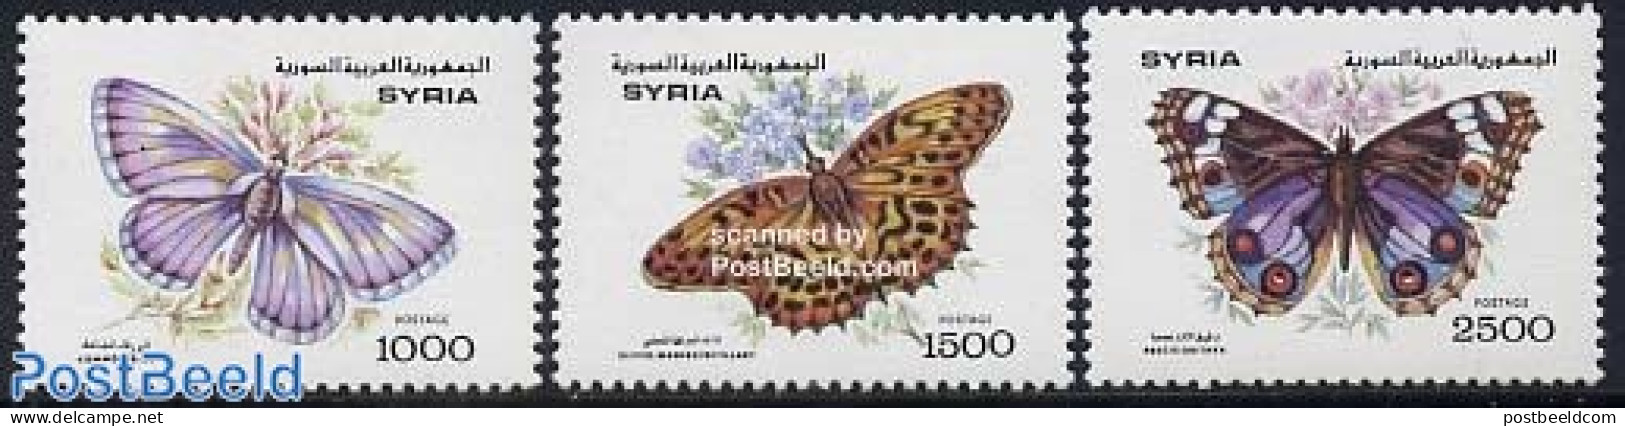 Syria 1993 Butterflies 3v, Mint NH, Nature - Butterflies - Siria